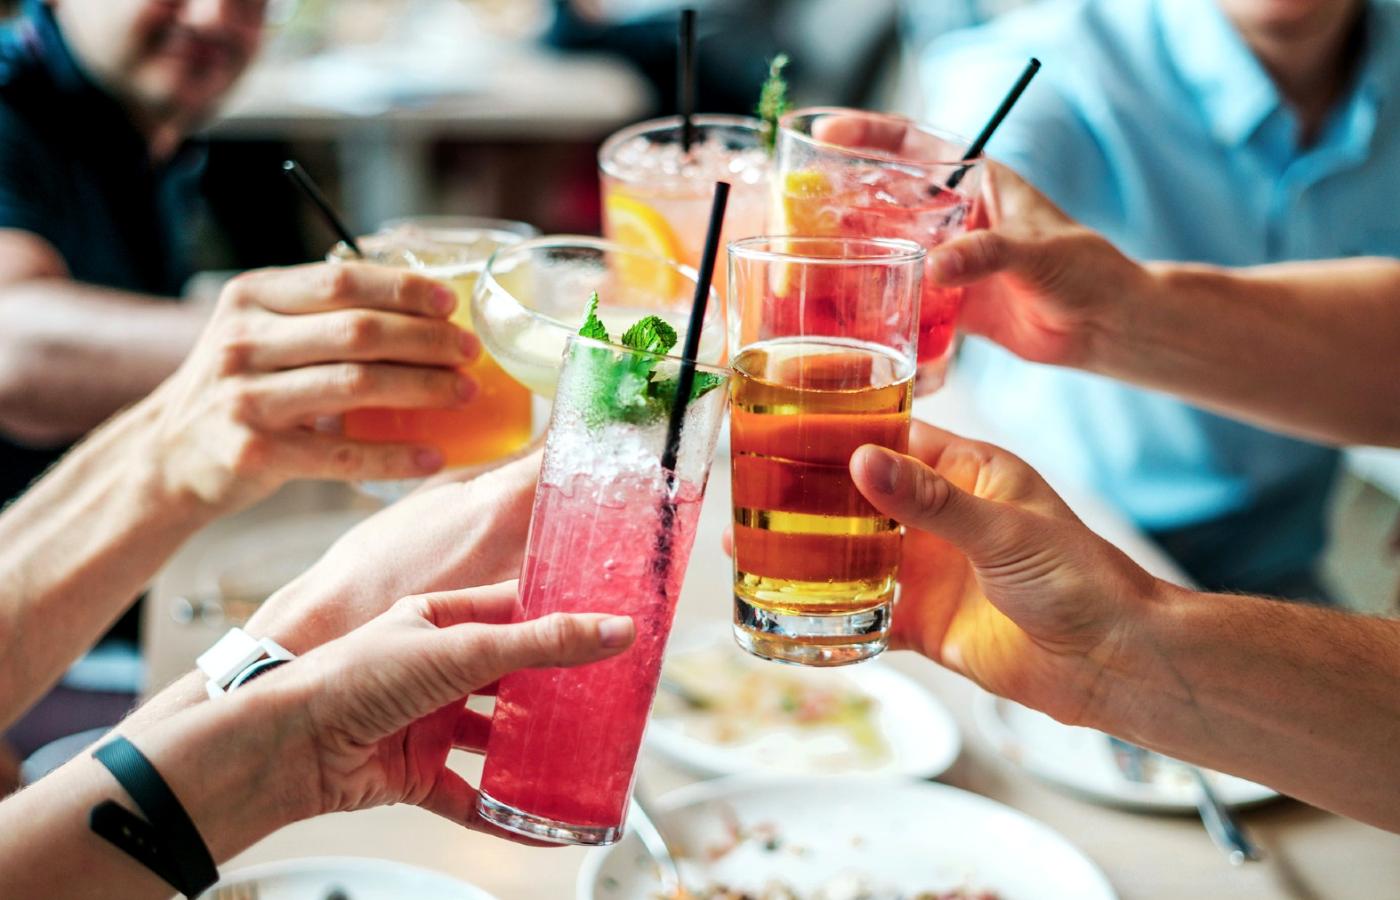 Co rozumieć przez umiarkowane spożycie alkoholu?